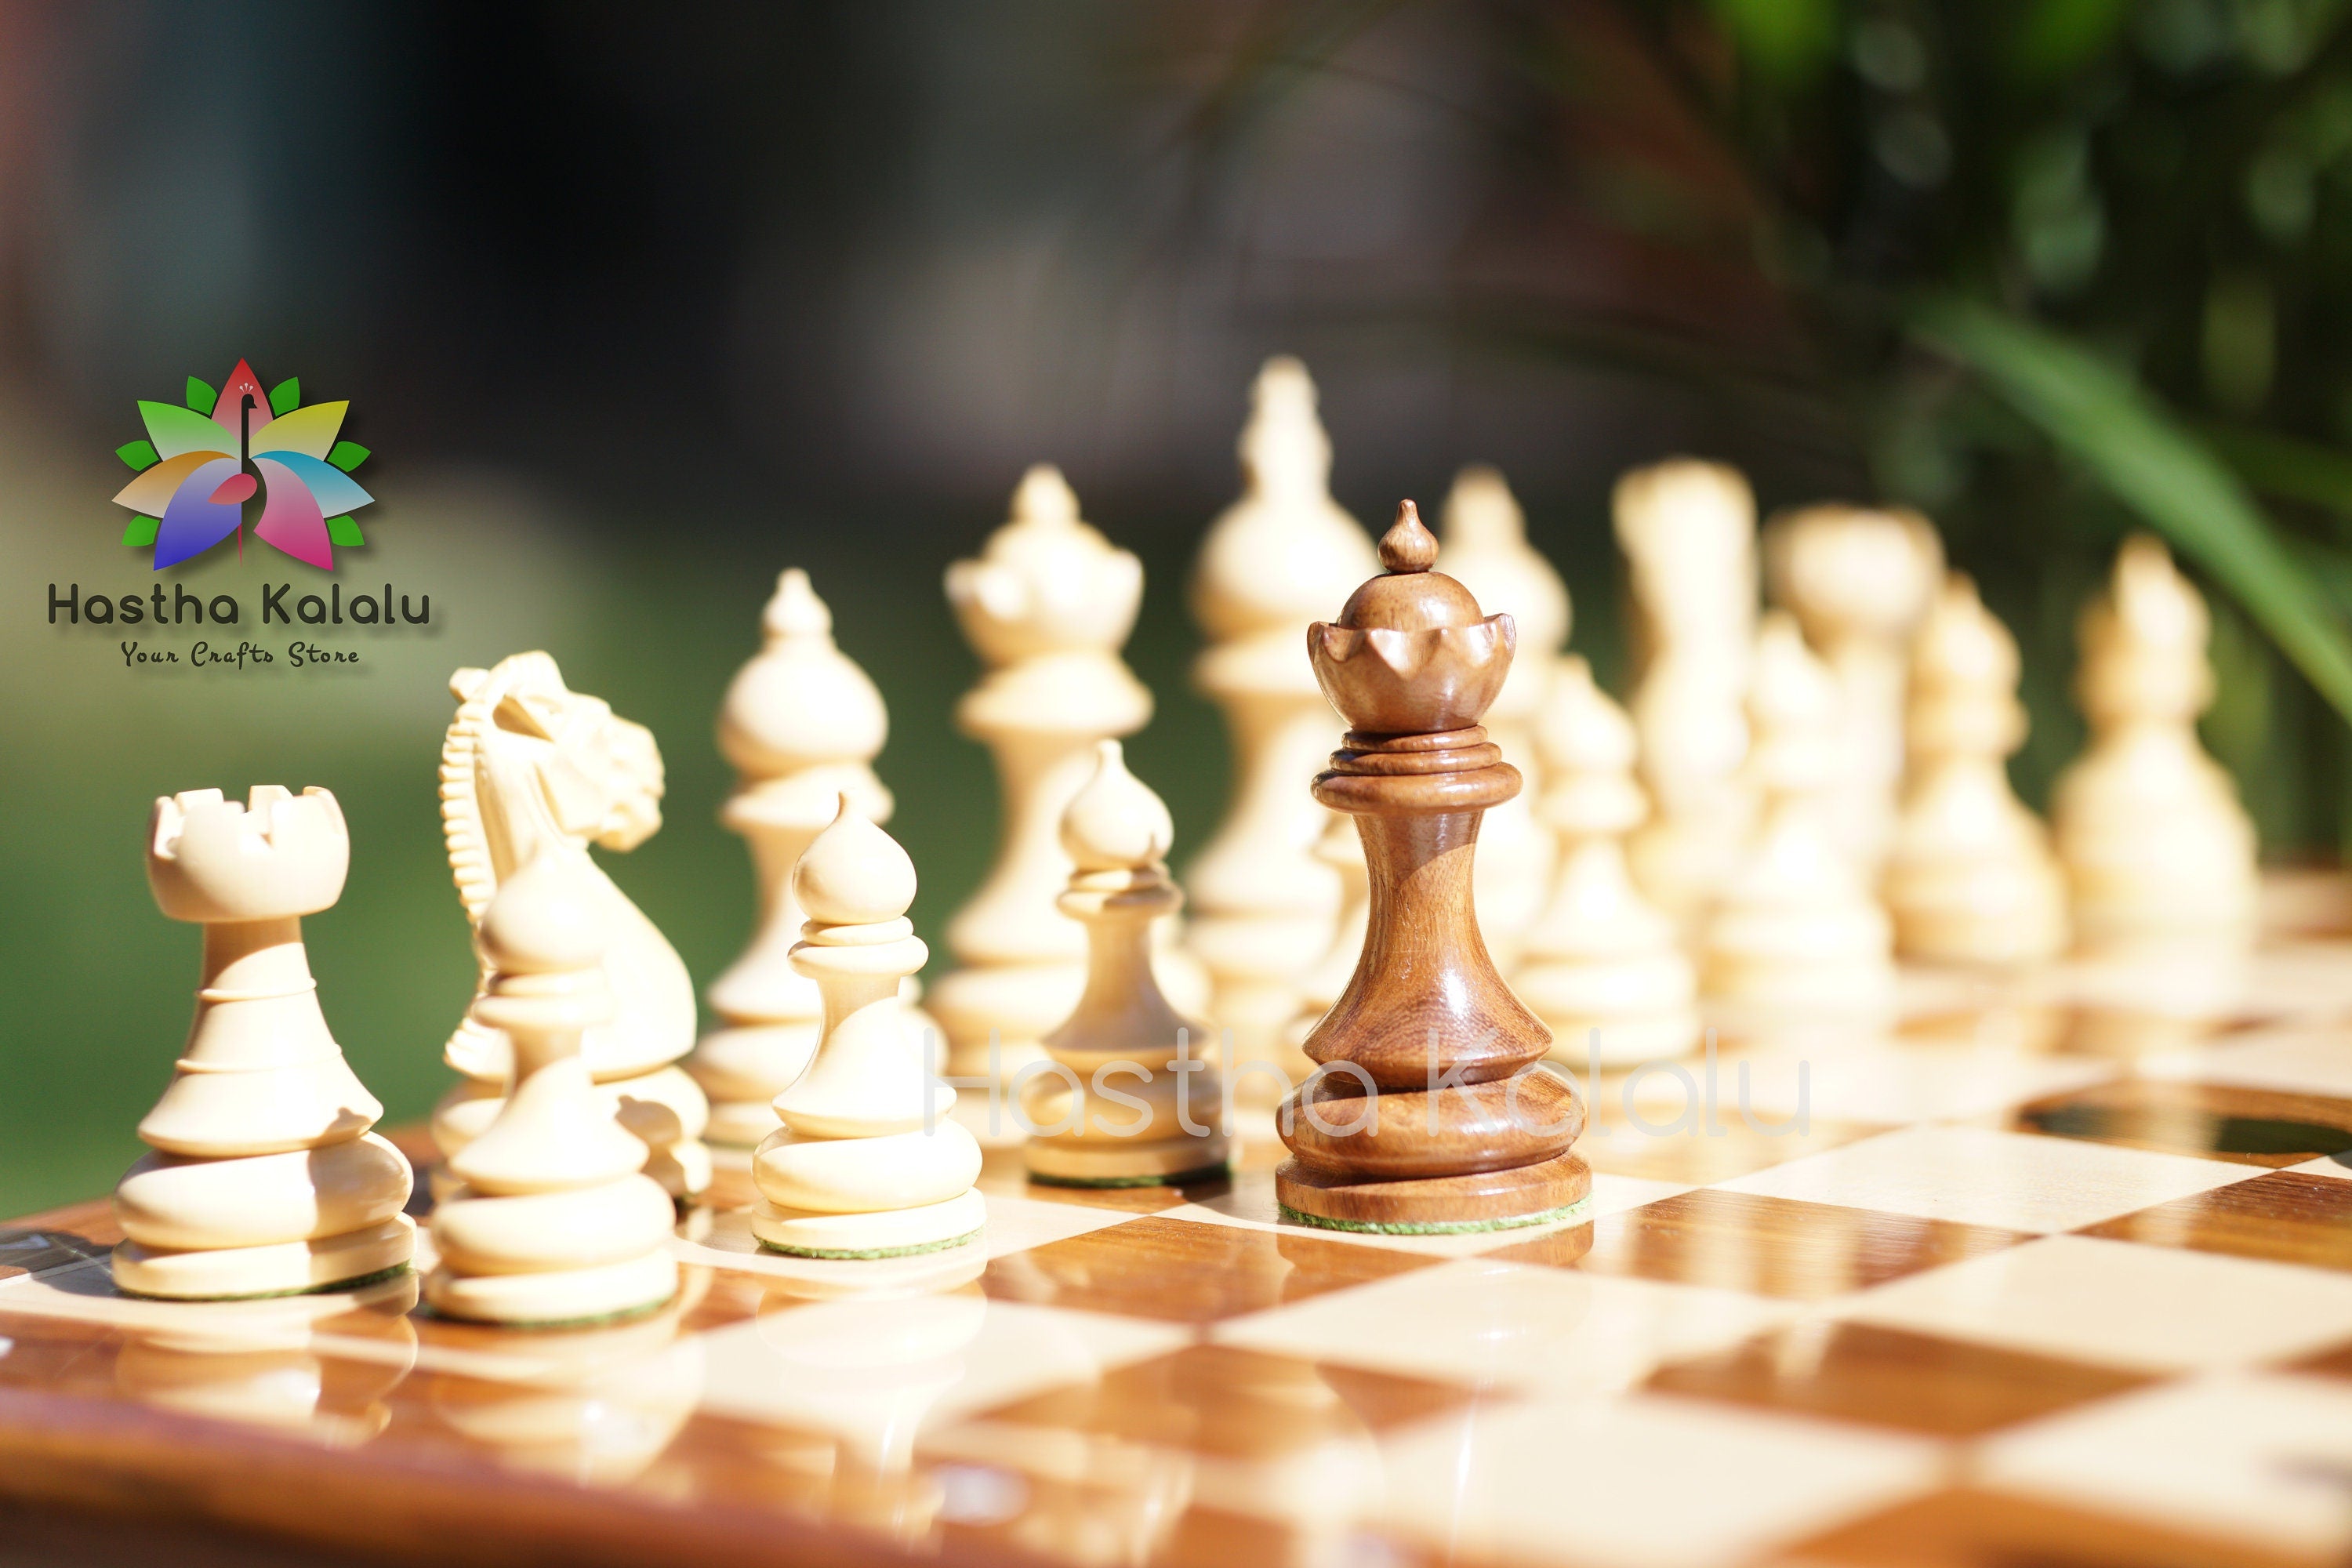 Jeu d'échecs combiné en Sheesham avec pièces d'échecs Staunton de la série Taj